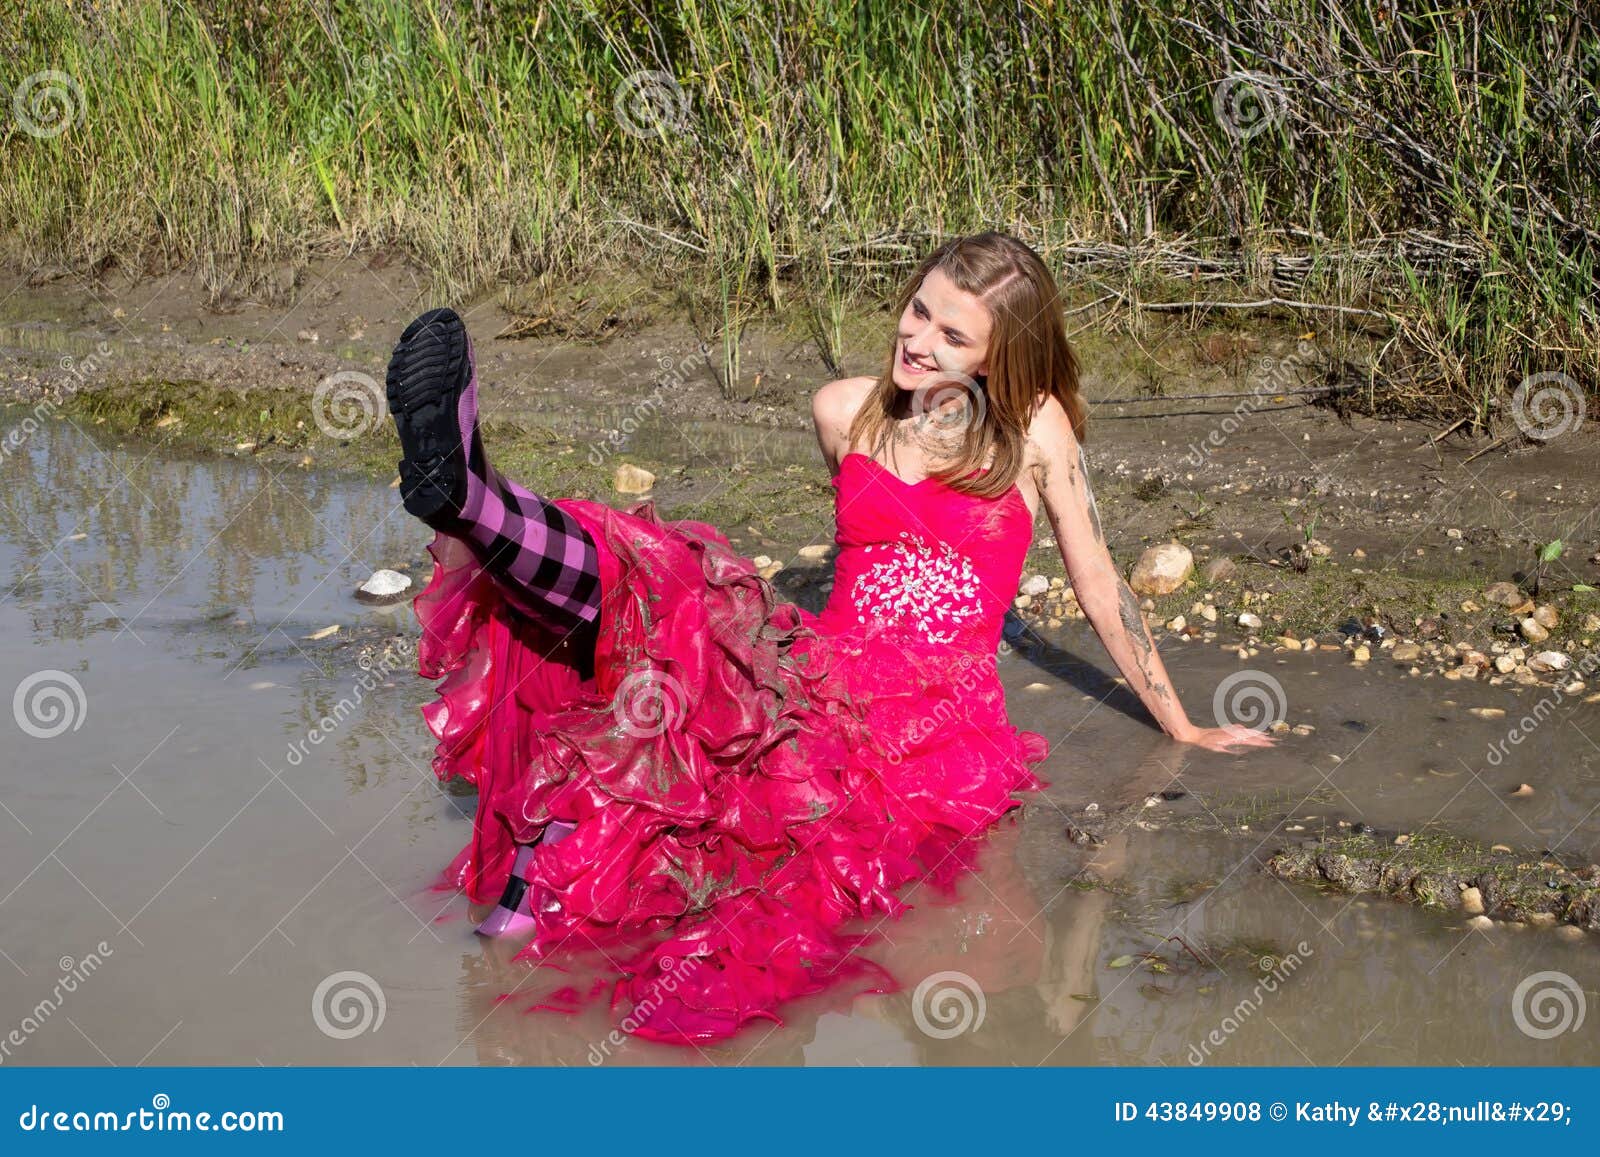 Prom Dress in Mud